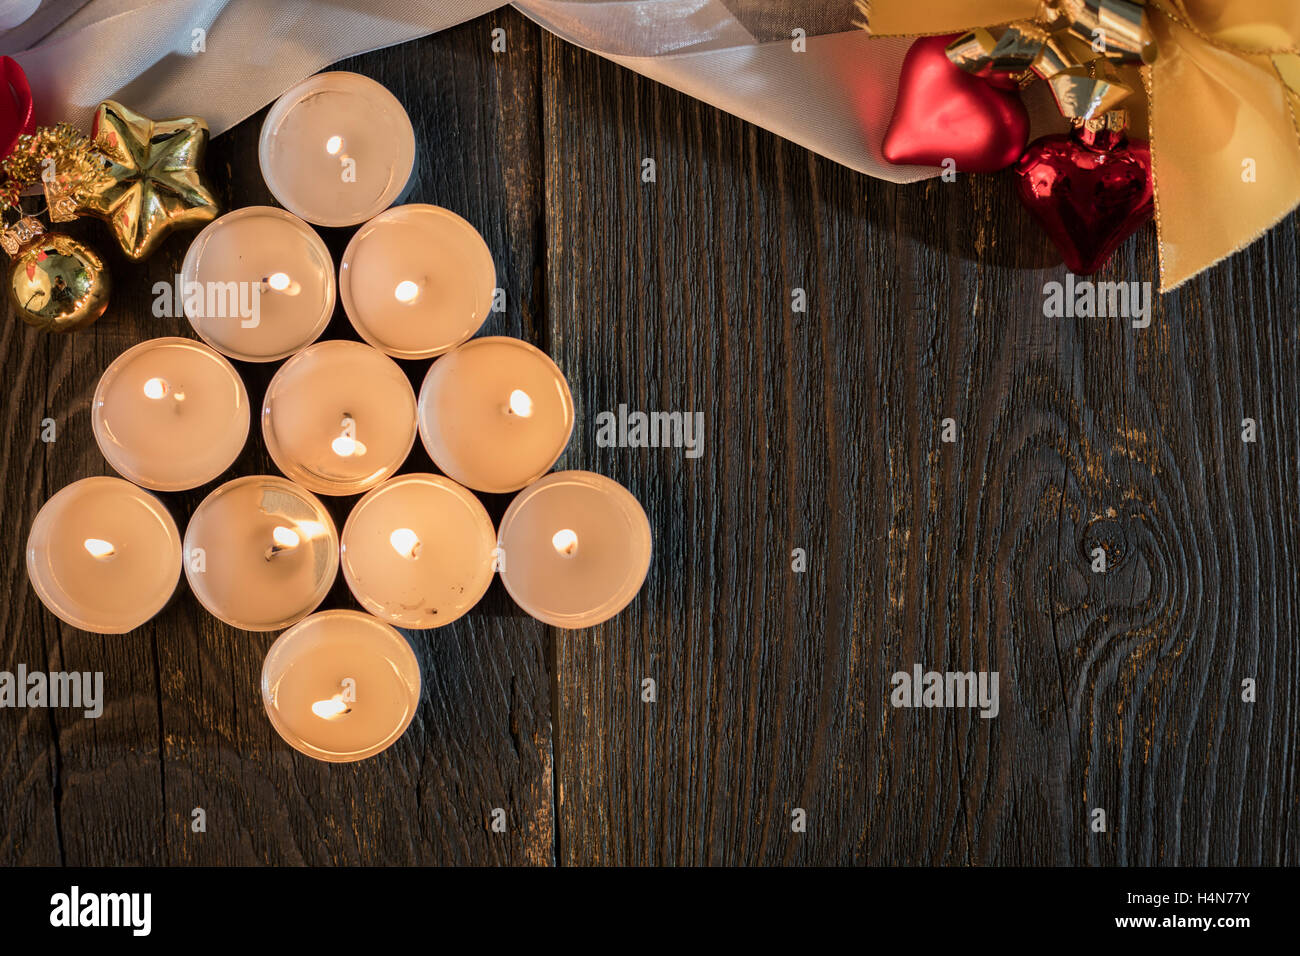 christmas xmas tree candles wood background Stock Photo